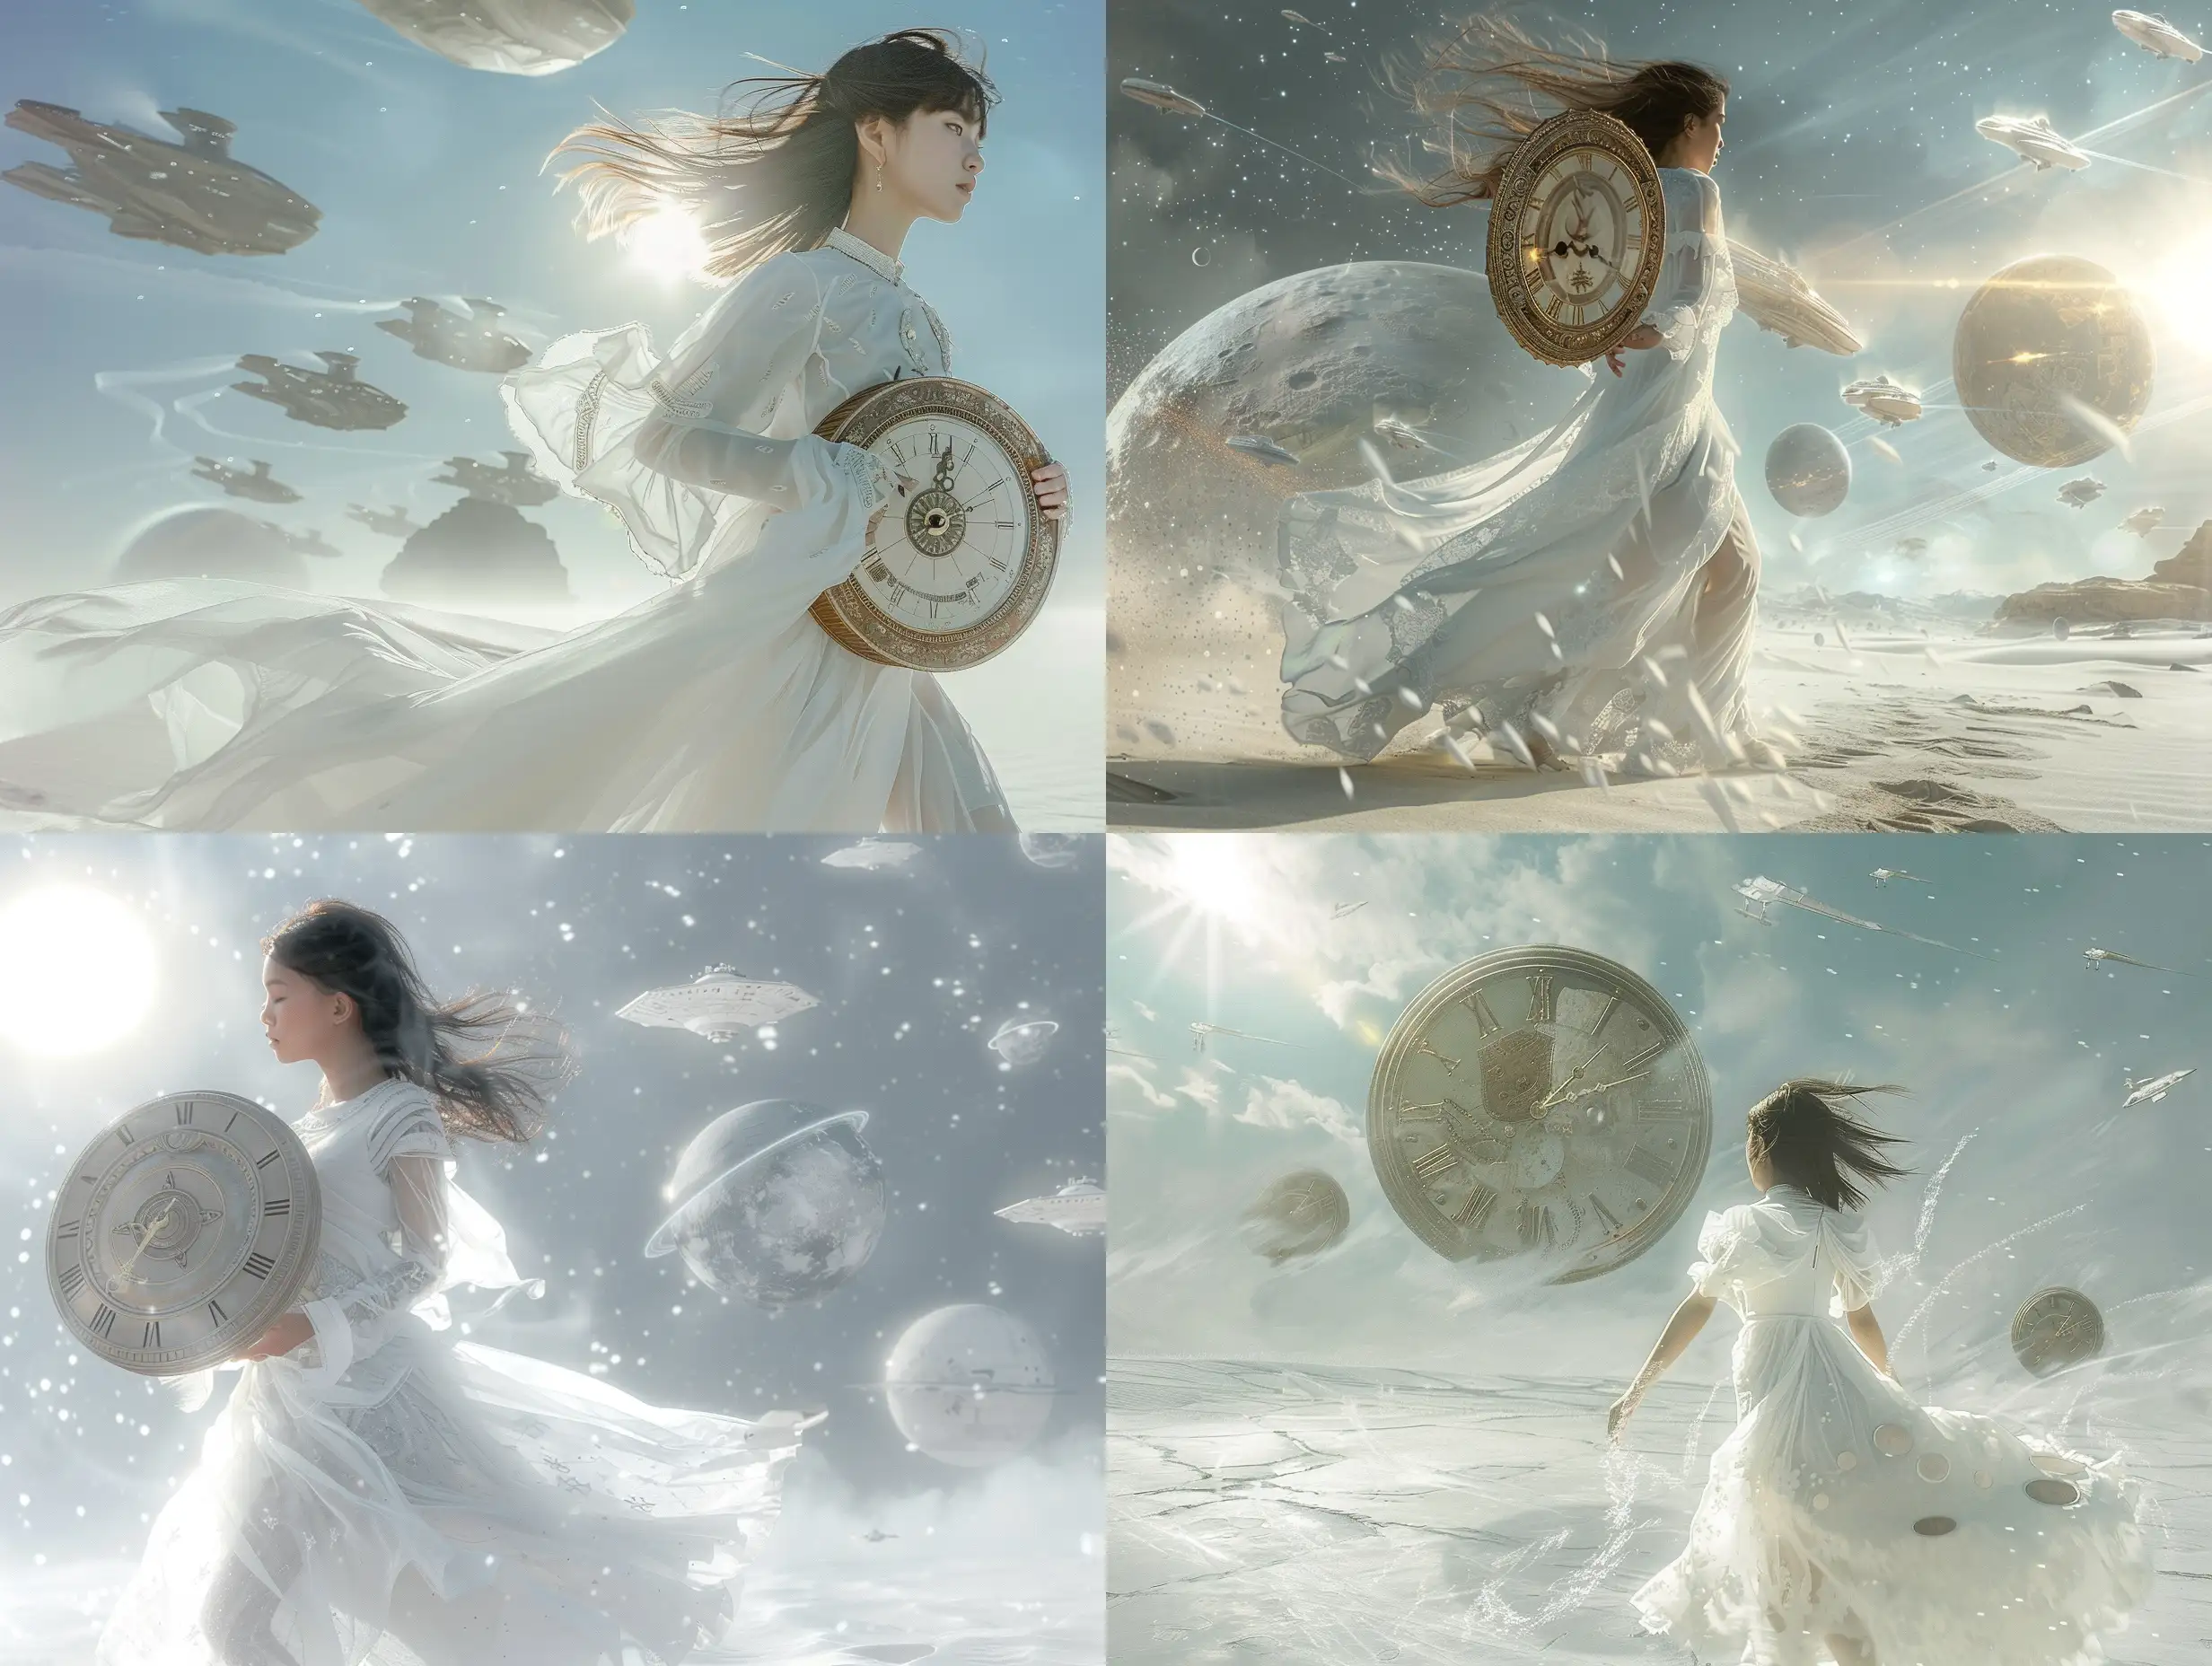 Фантастическая планета в стилистике фильма Дюна, девушка в белом, космическом, полупрозрачном платье, держит в руках огромный старинный циферблат от часов, идёт навстречу солнцу, ветер развевает волосы, на серо-синем небе проплывают космические корабли, 8k, дымка, ультодетализация, плёночная фотография, рассеяние света,  резкий фокус, высокая детализация  